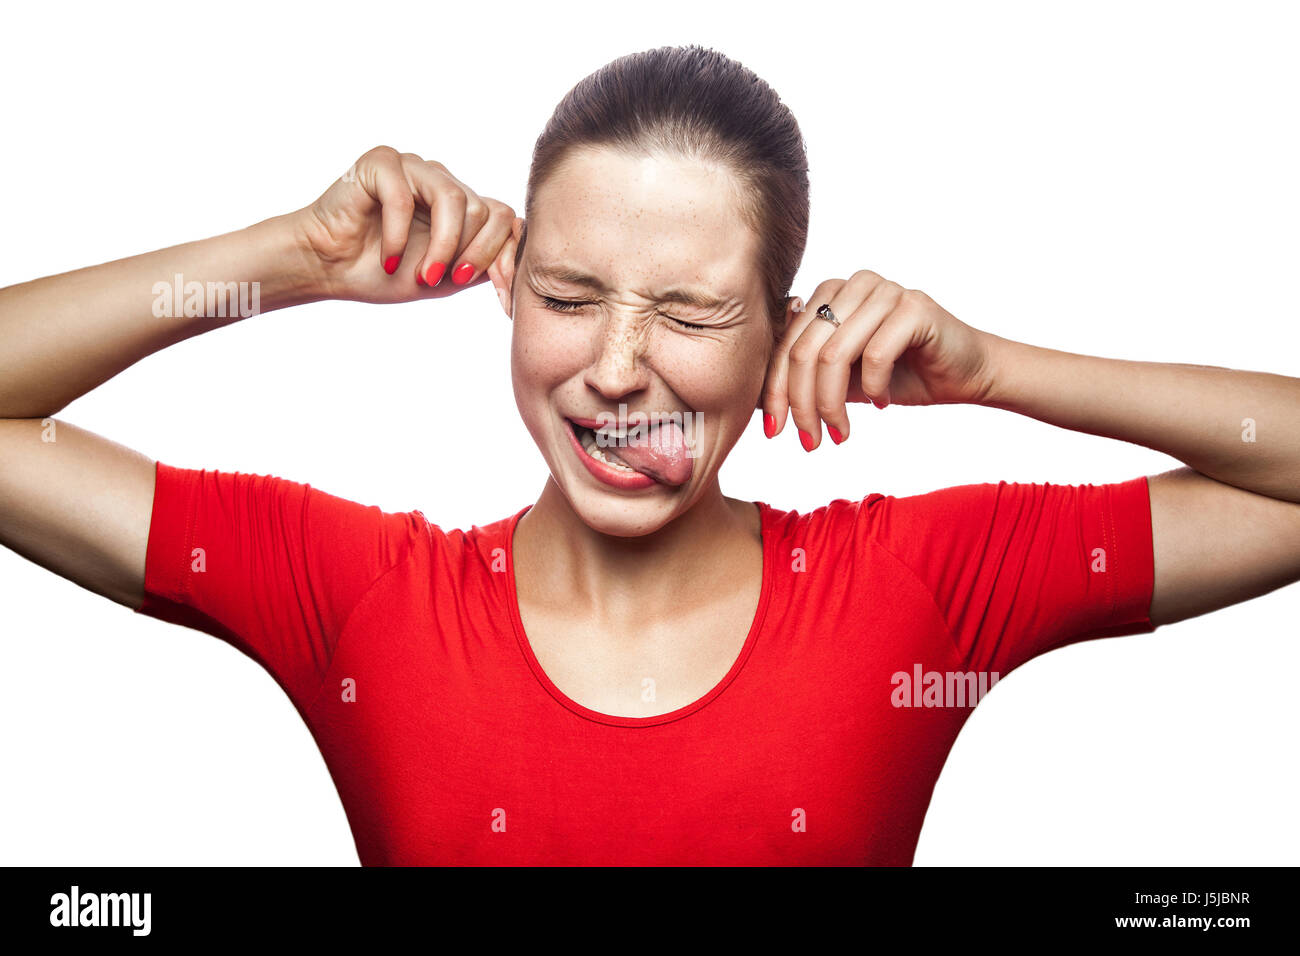 Porträt der verrückte lustige Frau im roten T-shirt mit Sommersprossen. Blick in die Kamera, Studio gedreht. isoliert auf weißem Hintergrund. Stockfoto